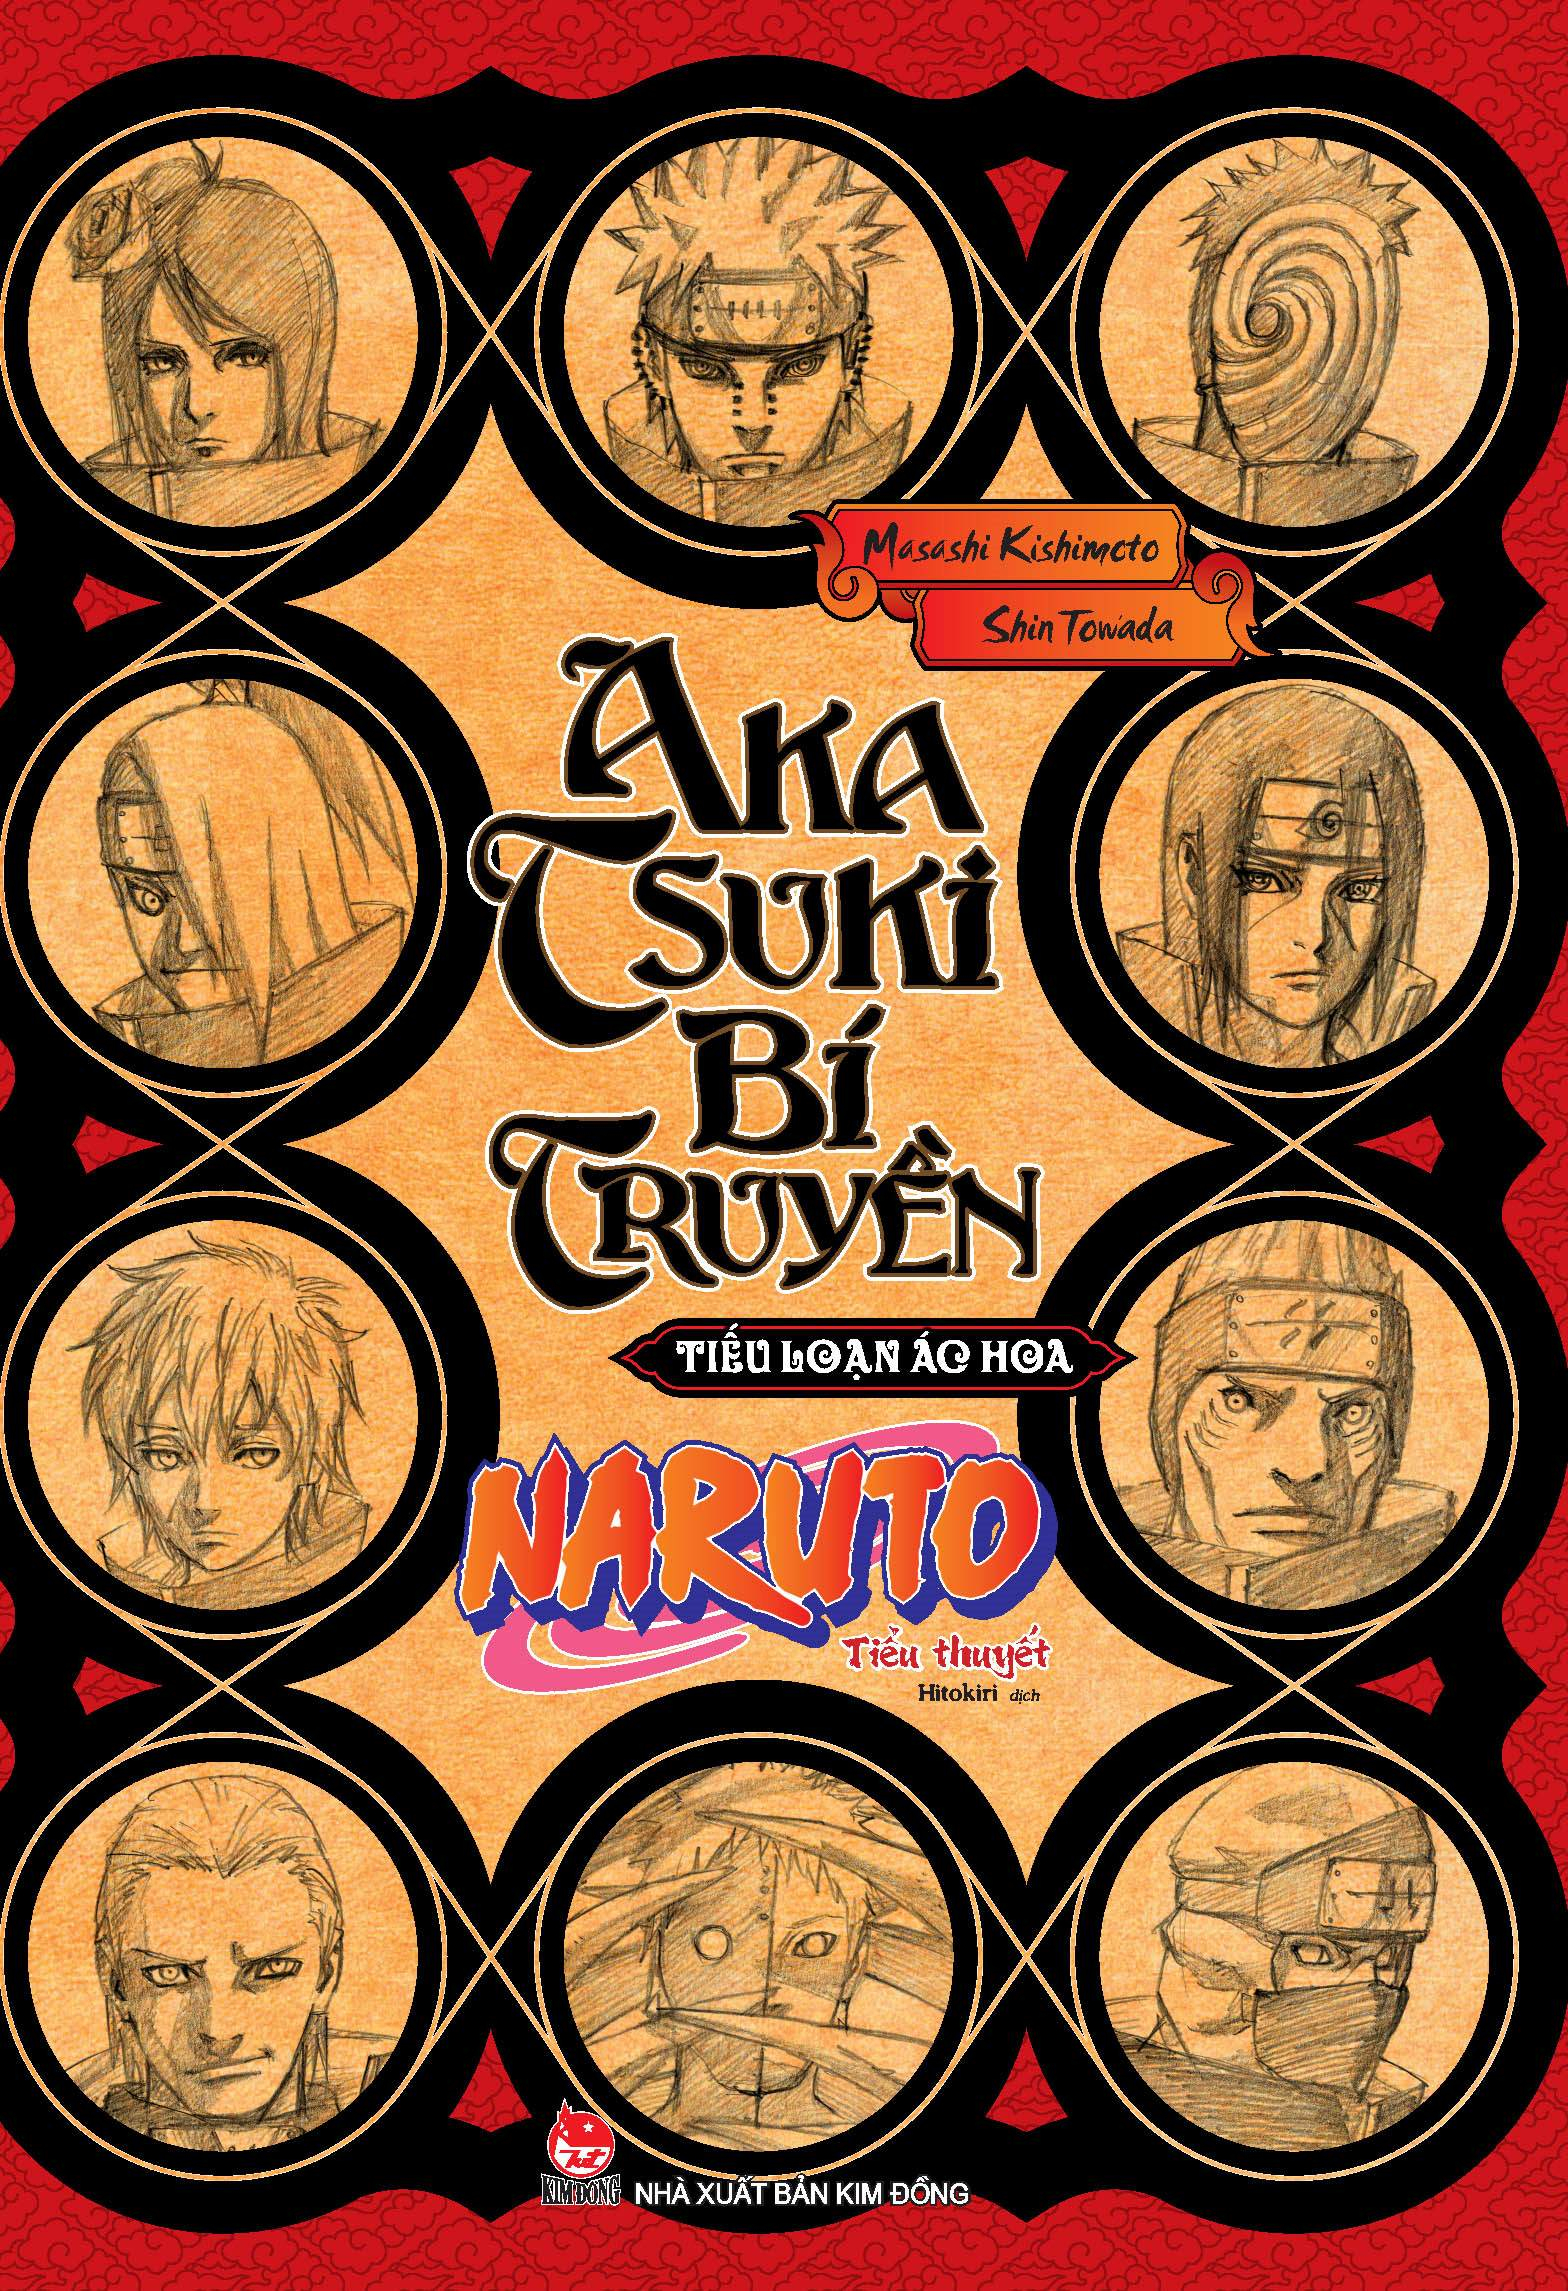 Boxset Tiểu Thuyết Naruto Bí Truyền Bộ 6 Tập PDF